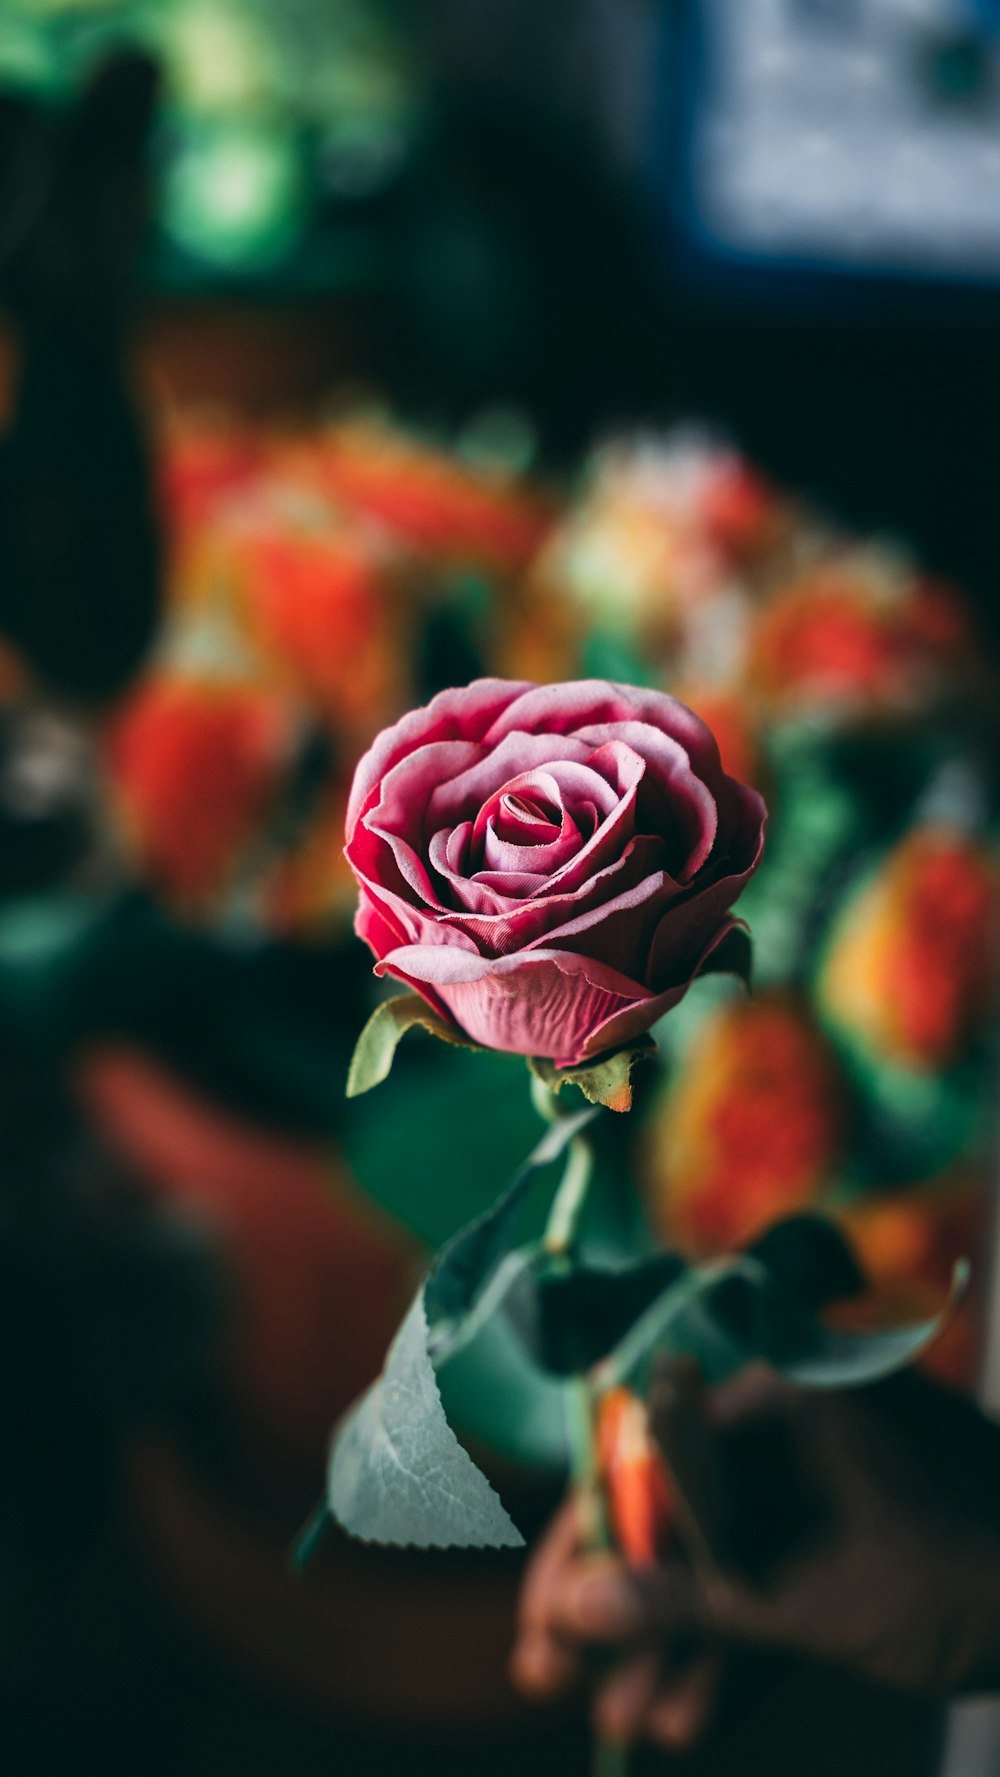 rosa roja en flor foto de cerca